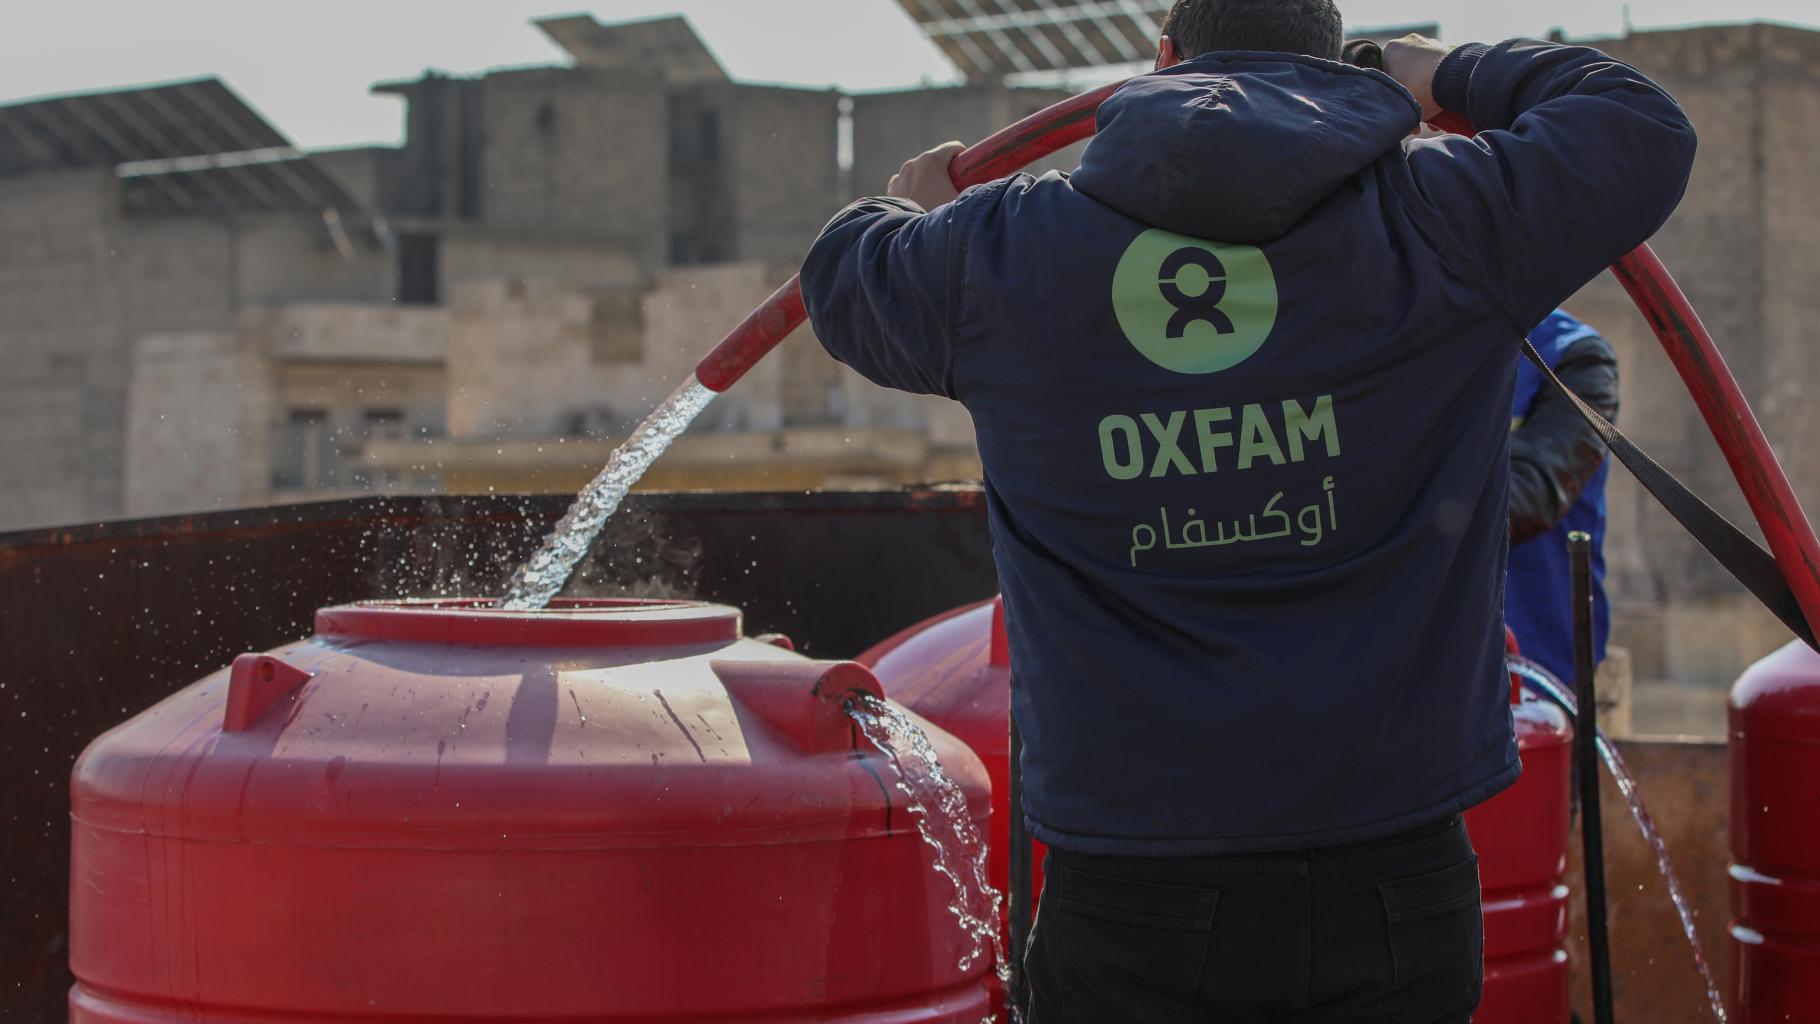 Ein_e Oxfam-Mitarbeiter_in, mit einer blauen Kaputzenjacke mit grünem Oxfam-Logo bekleidet, befüllt mithilfe eines Schlauches einen roten Wassertank mit sauberem Trinkwasser.